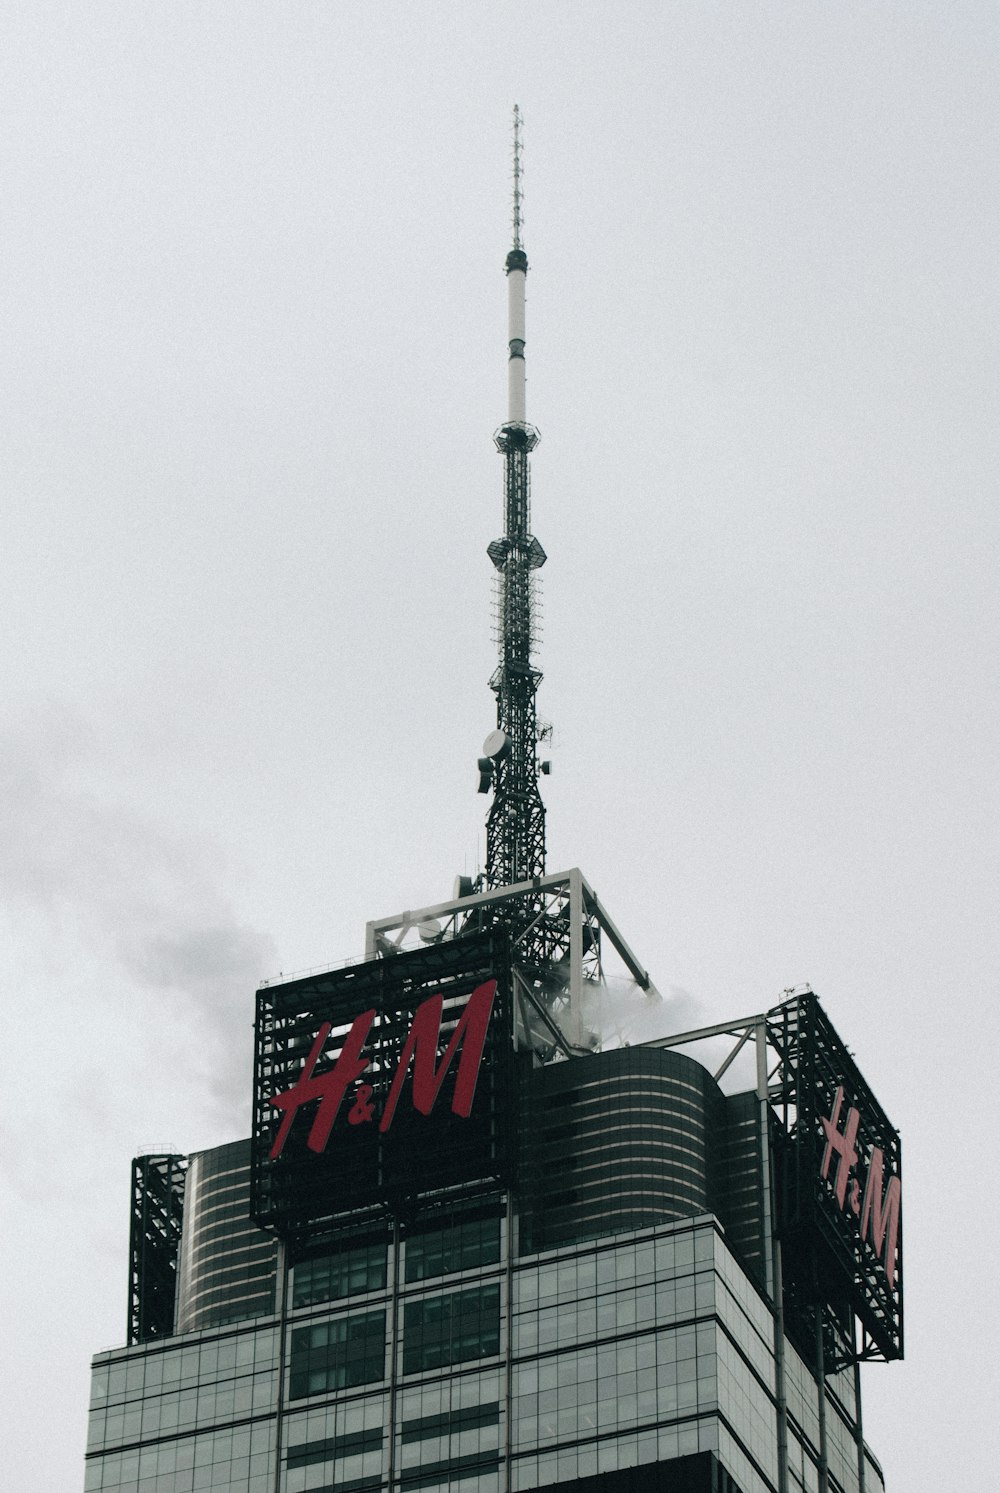 H&M building